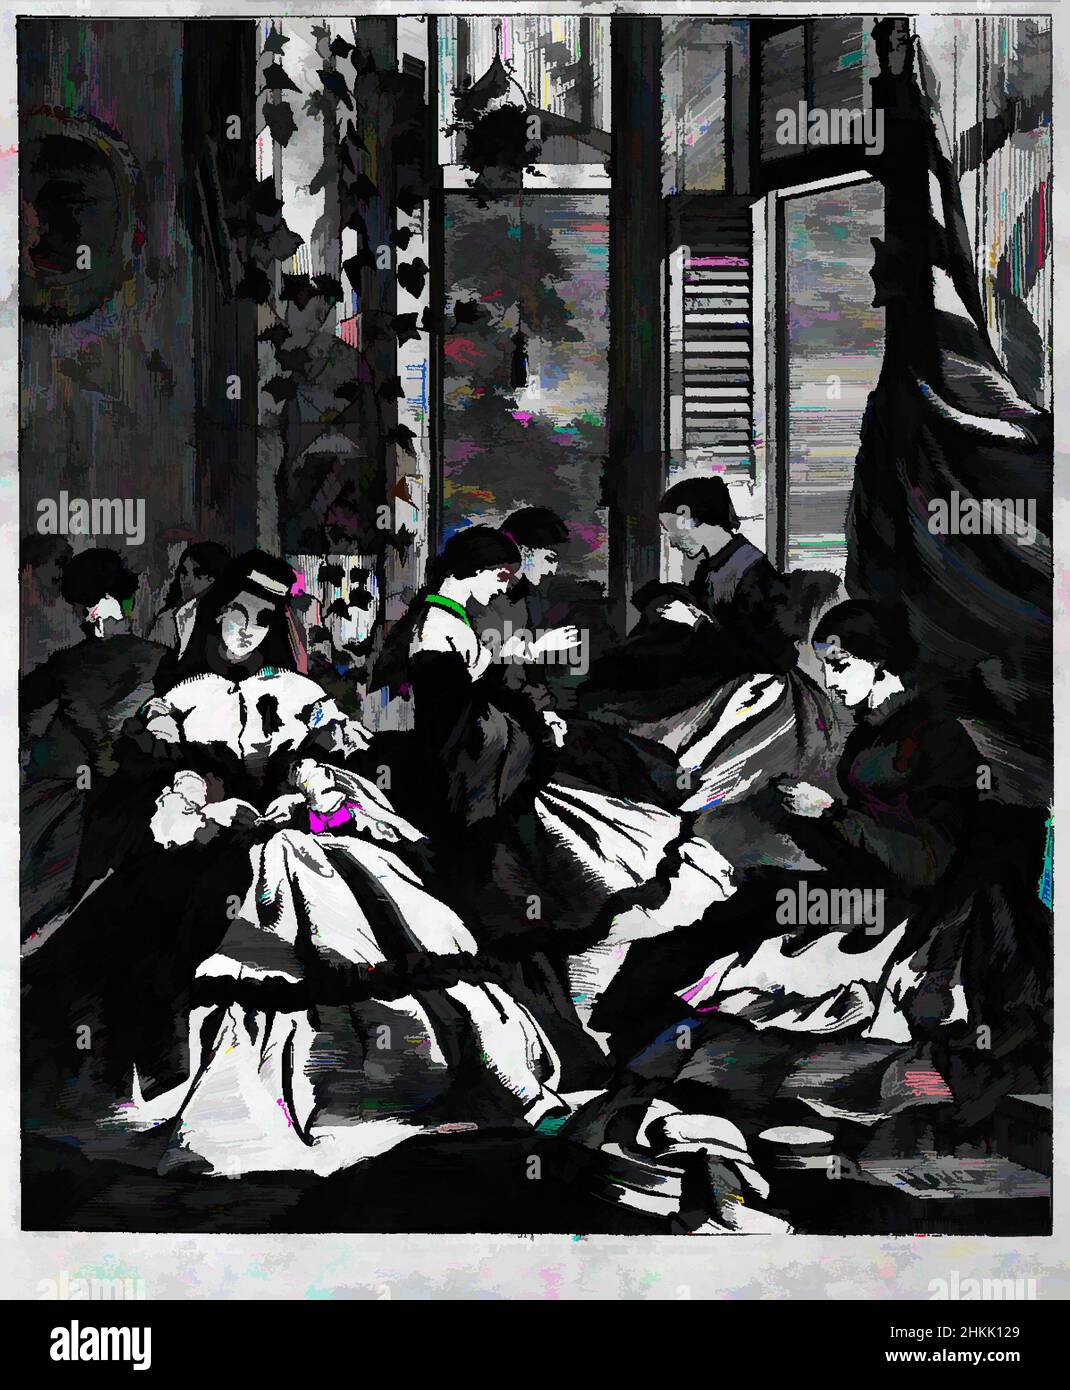 Art inspiré par la guerre--faire Havelocks pour les volontaires, Winslow Homer, américain, 1836-1910, gravure de bois, 1861, Illustration : 9 x 13 3/4 po., 1861, guerre civile, Harper's Weekly, Sesquicentennial, Couture, effort de guerre, Winslow Homer, femmes, oeuvres classiques modernisées par Artotop avec une touche de modernité. Formes, couleur et valeur, impact visuel accrocheur sur l'art émotions par la liberté d'œuvres d'art d'une manière contemporaine. Un message intemporel qui cherche une nouvelle direction créative. Artistes qui se tournent vers le support numérique et créent le NFT Artotop Banque D'Images